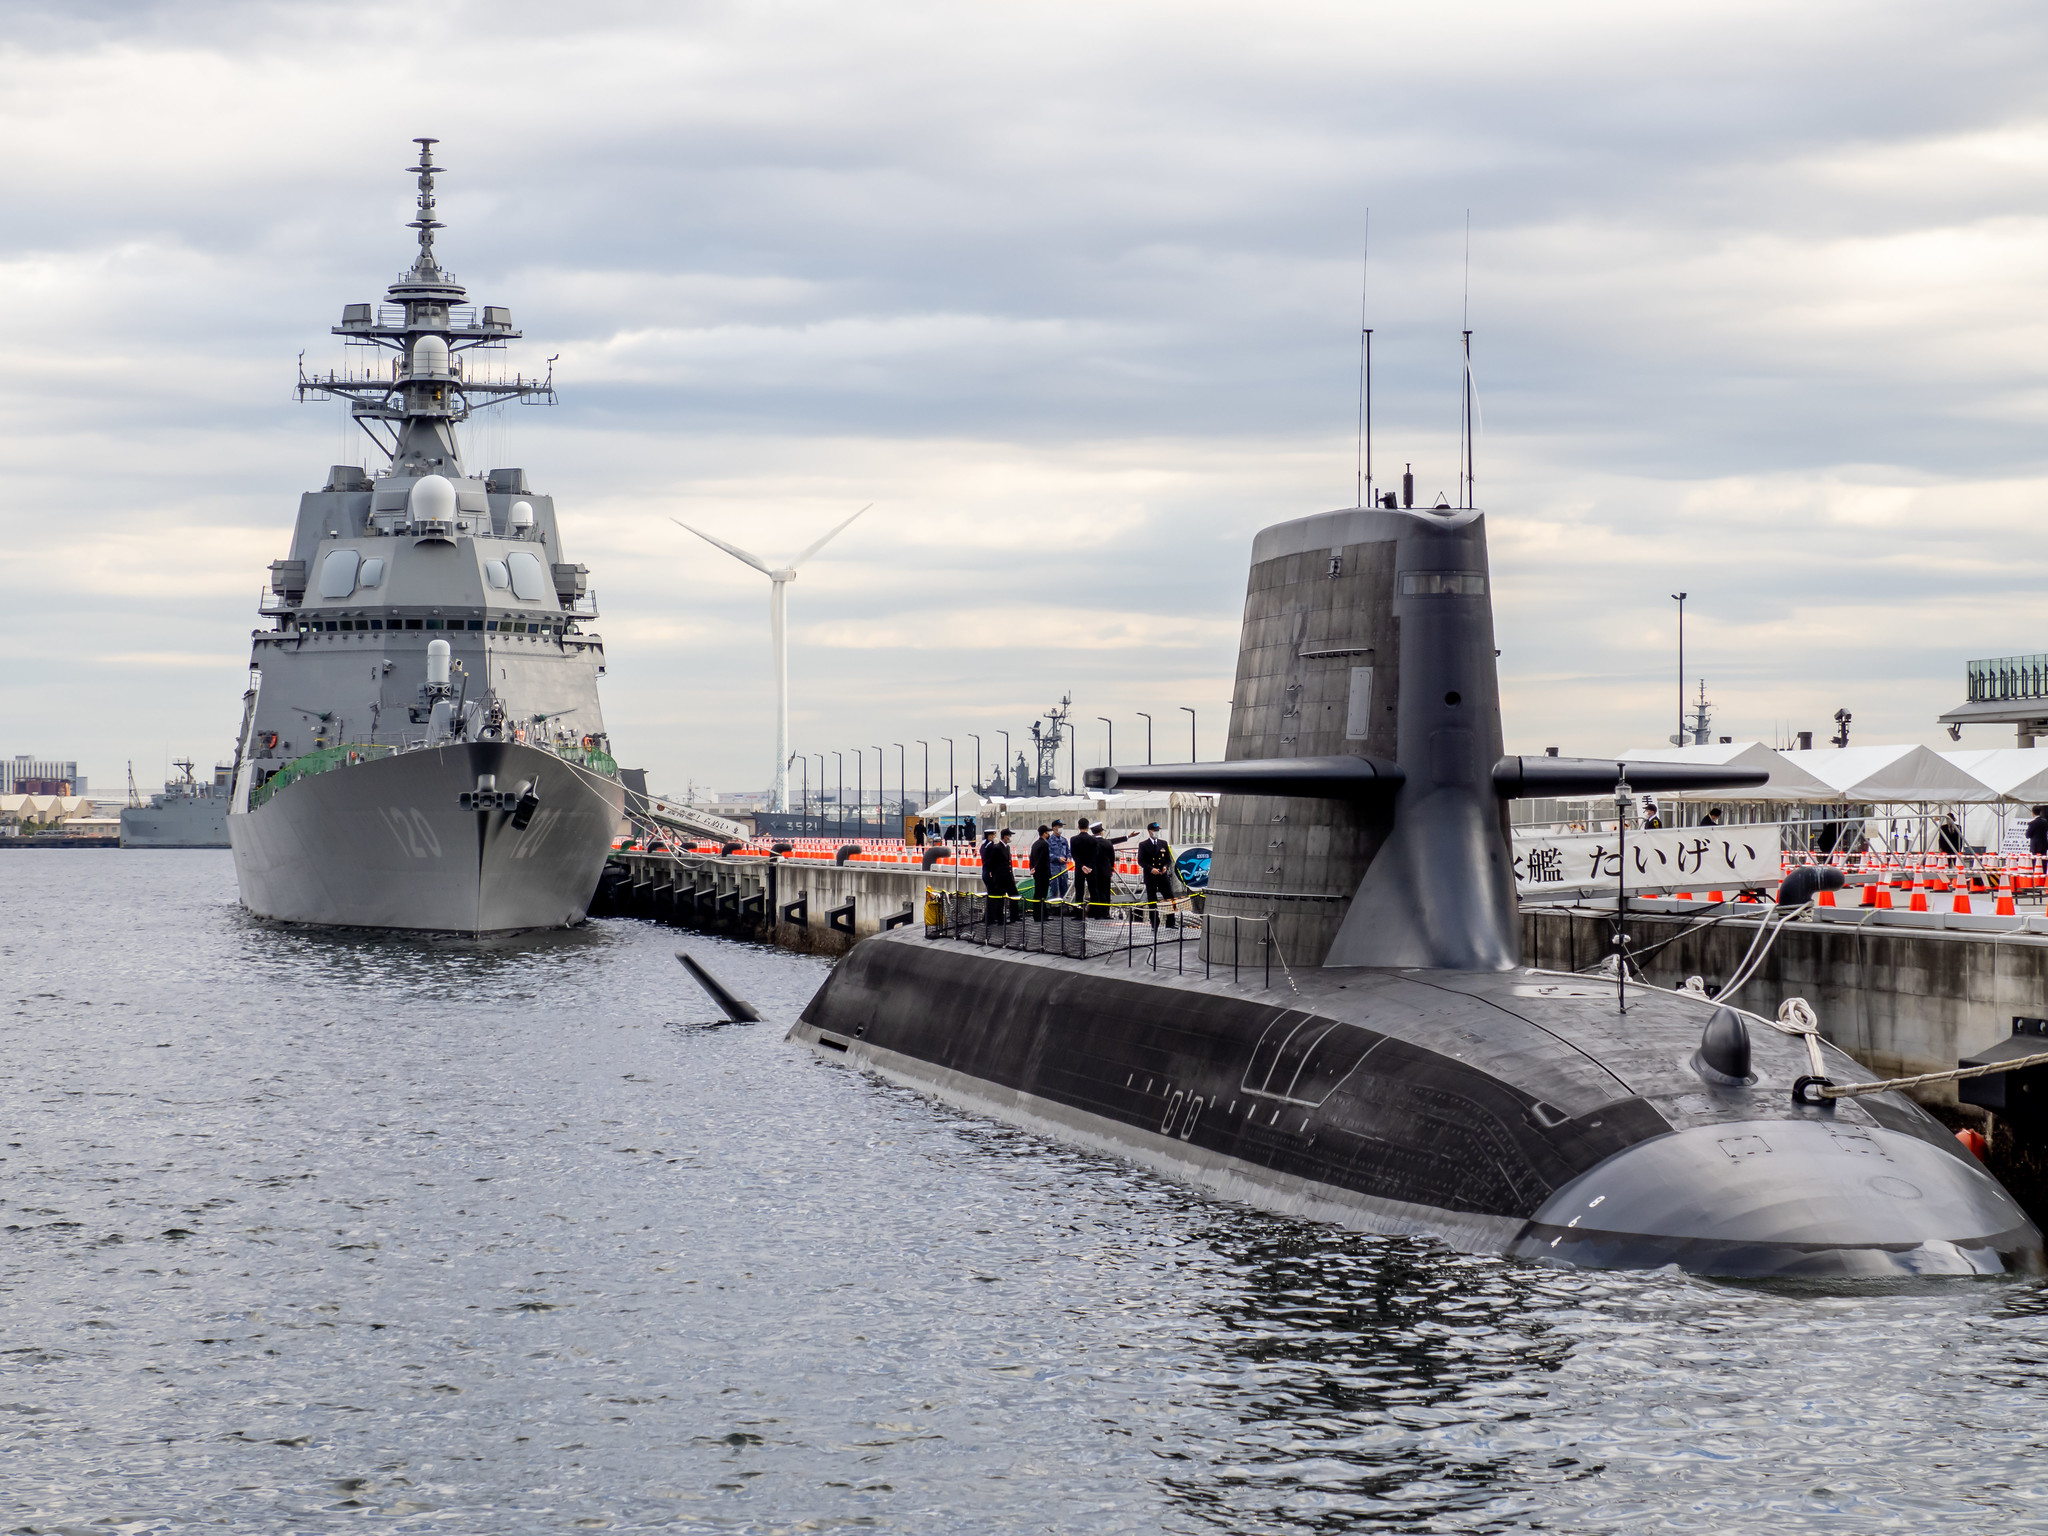 横浜で海上自衛隊の艦艇をたくさん観てきました ミニP-3C機動展示も 国際観艦式 #フリートウィーク2022 #JMSDF #海上自衛隊